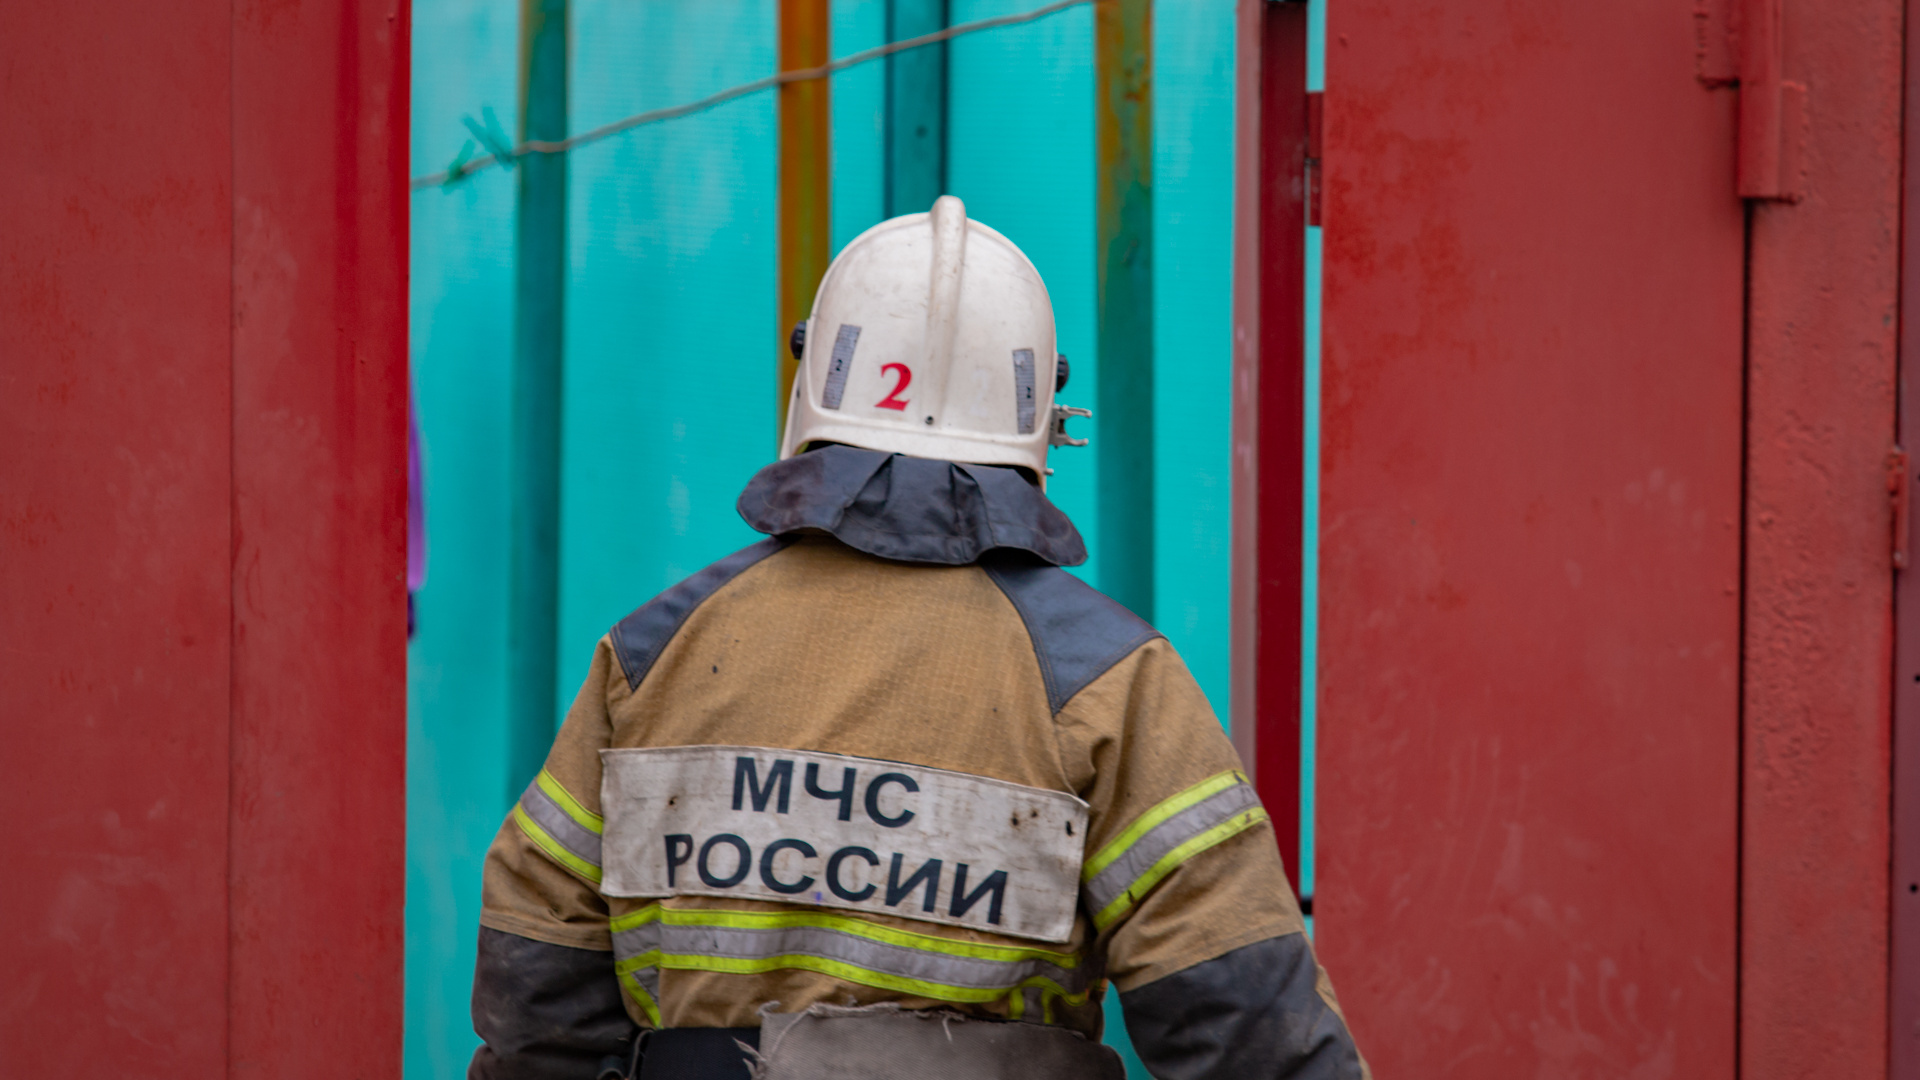 МЧС отсудило четыре тысячи рублей у бывшего пожарного за форму